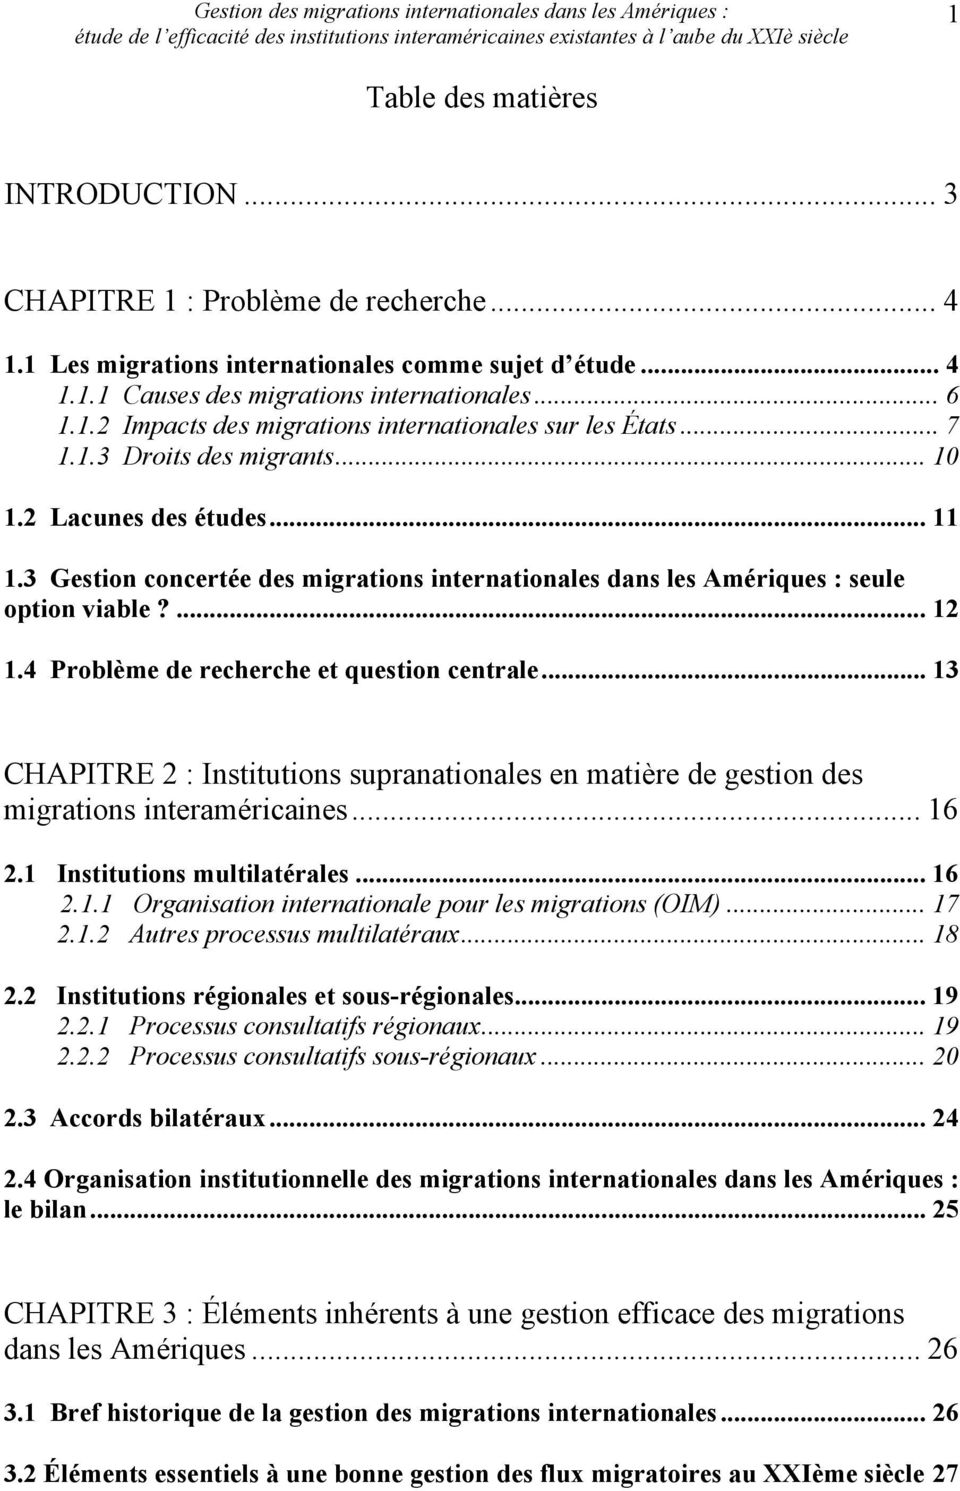 4 Problème de recherche et question centrale... 13 CHAPITRE 2 : Institutions supranationales en matière de gestion des migrations interaméricaines... 16 2.1 Institutions multilatérales... 16 2.1.1 Organisation internationale pour les migrations (OIM).